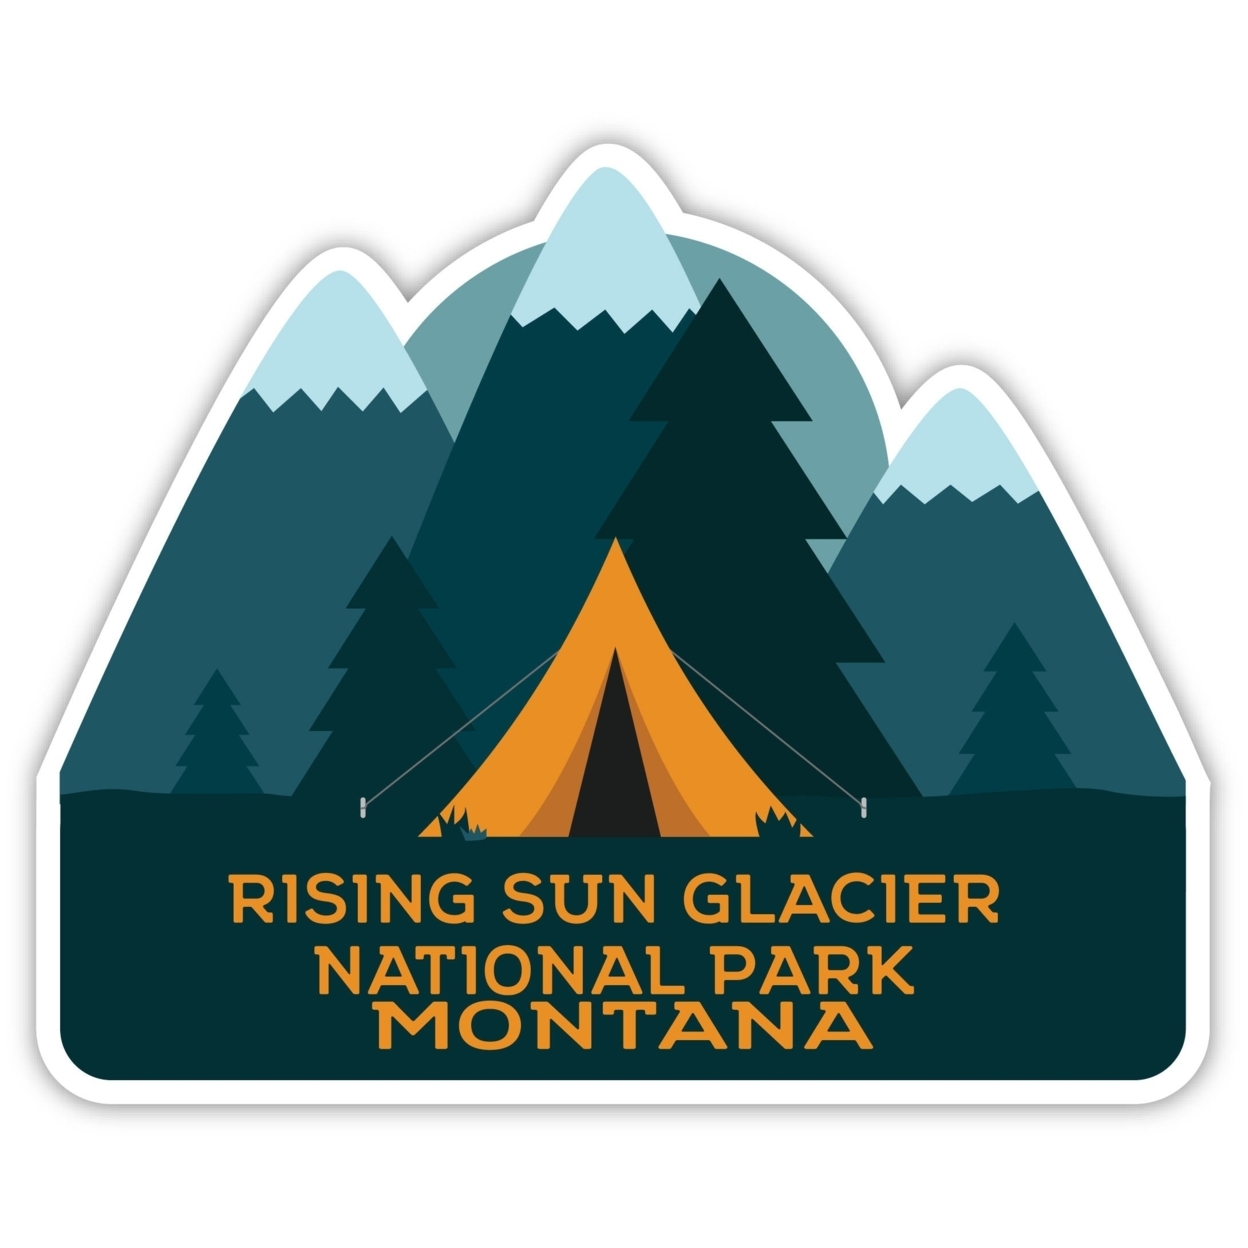 Rising Sun Glacier National Park Montana Souvenir Decorative Stickers (Choose Theme And Size) - Single Unit, 2-Inch, Tent